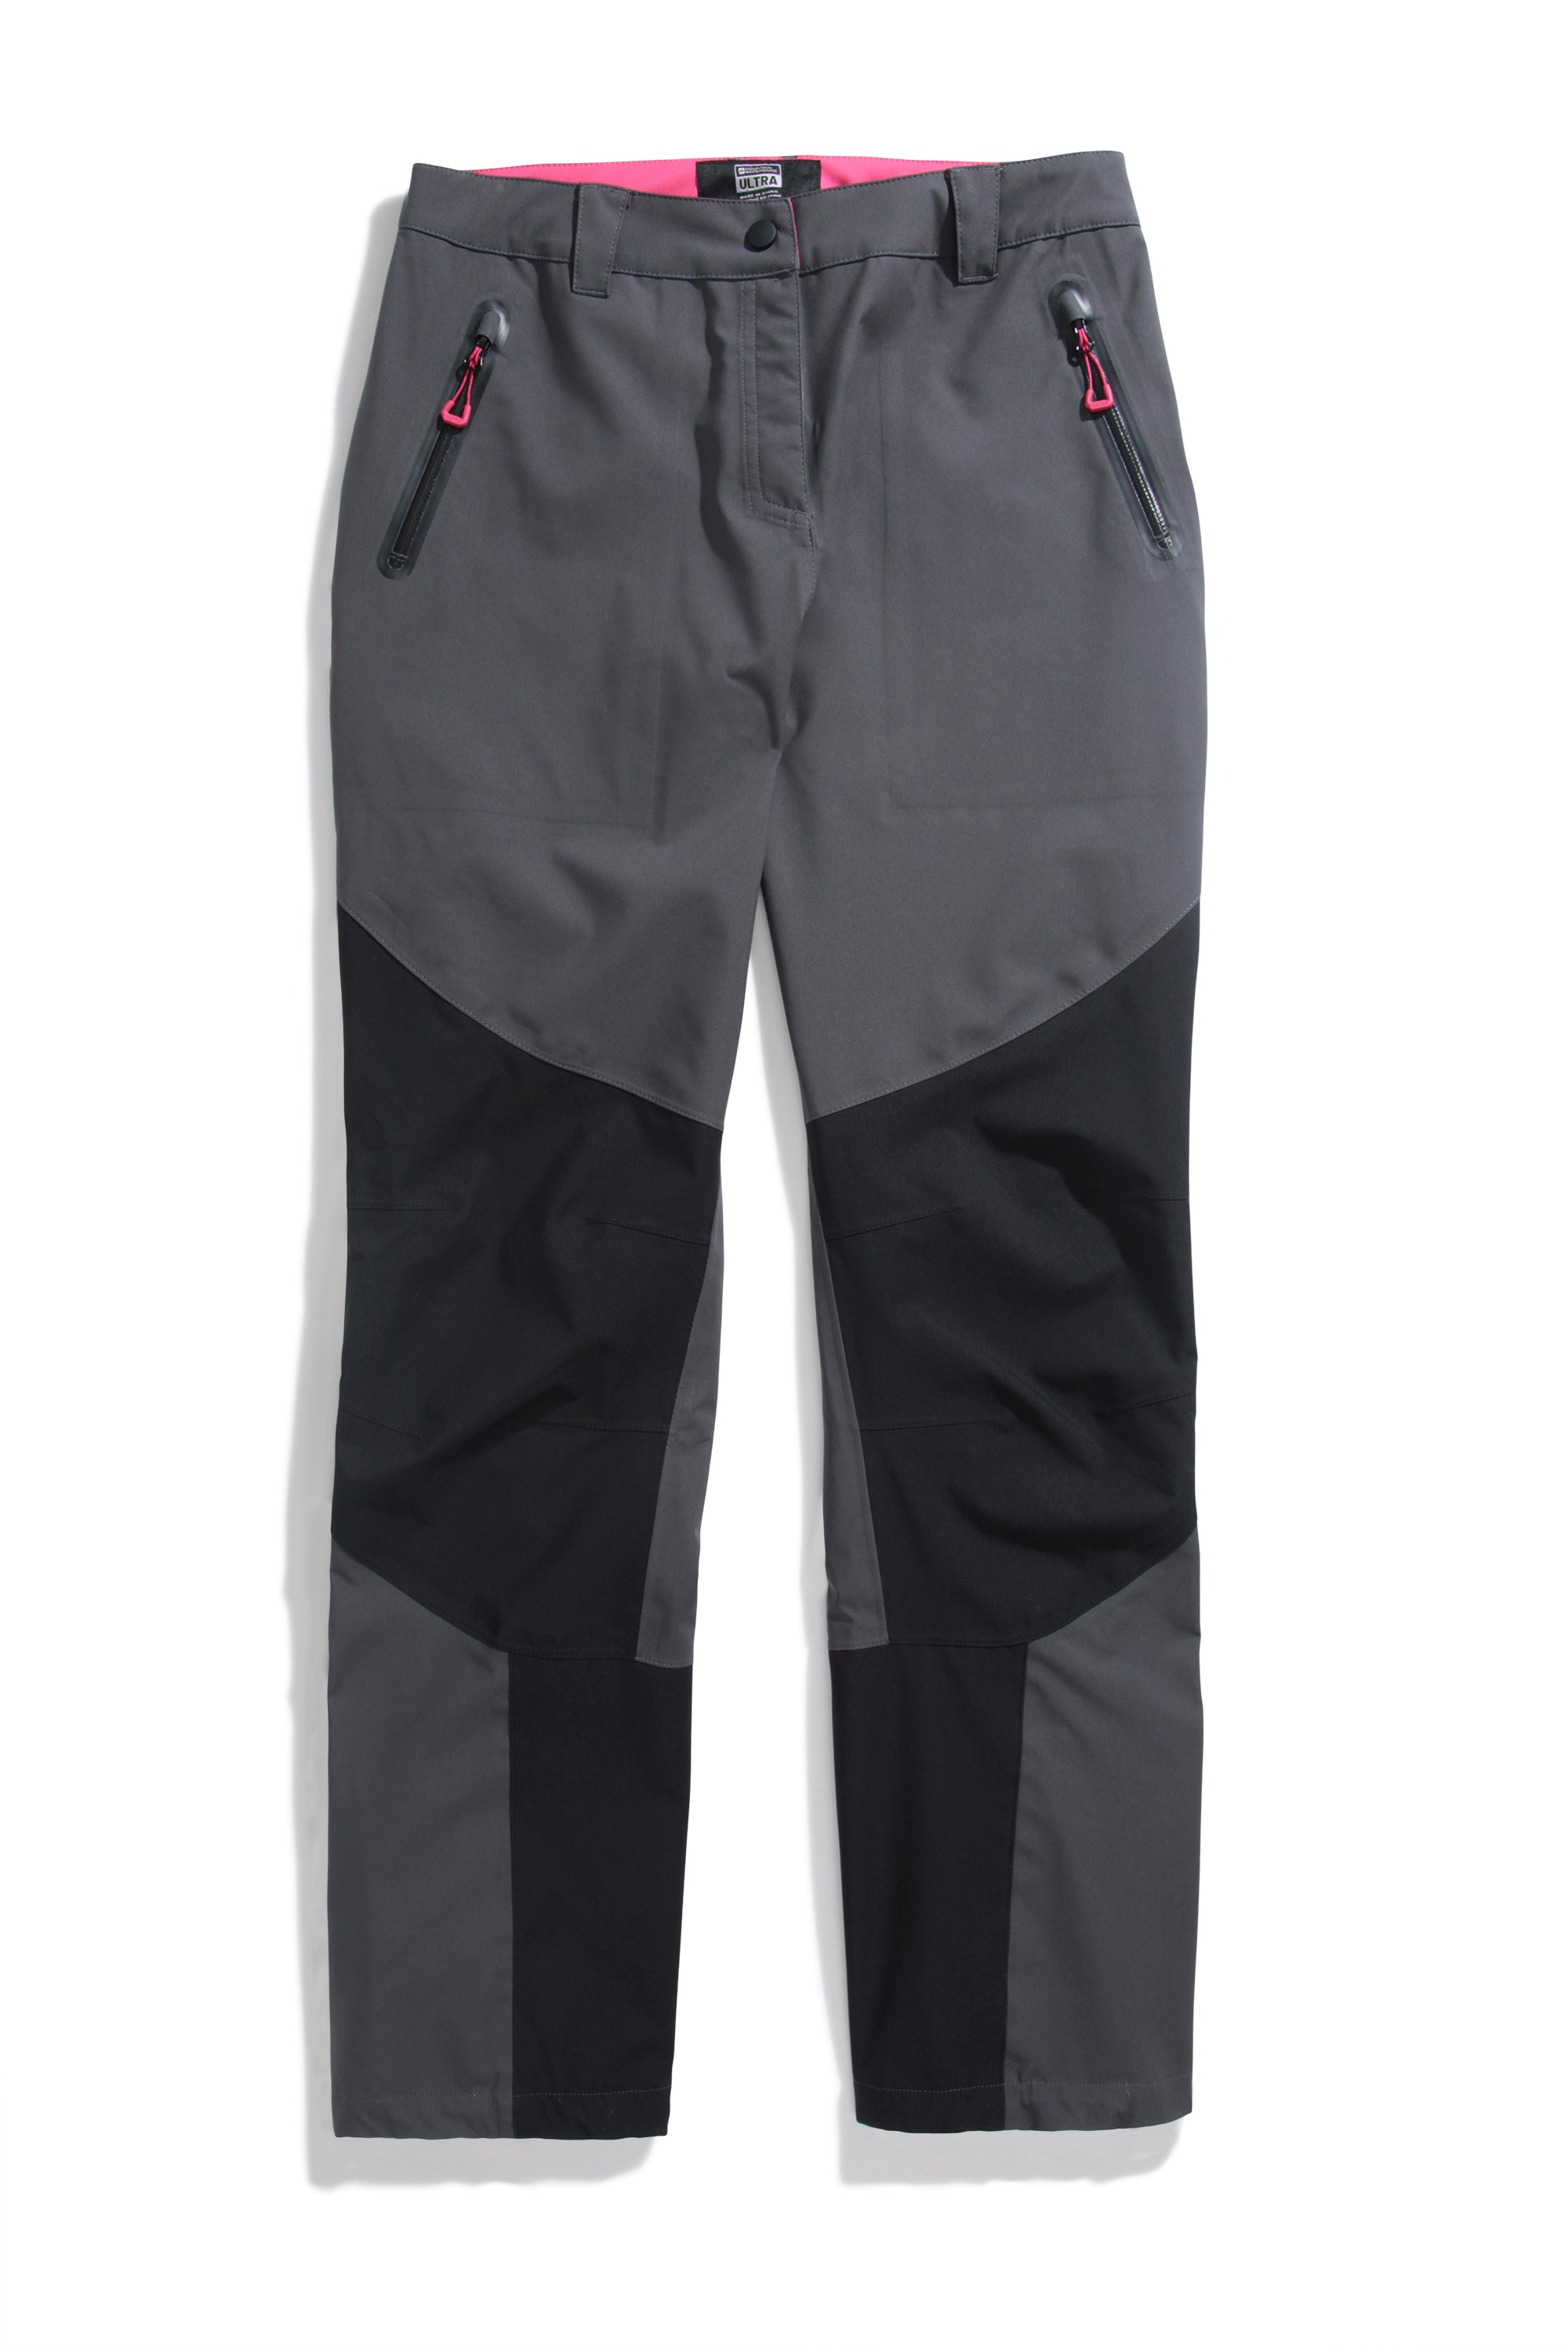 Pupil travel 22aw Mountaneering straight pants side zippers waterproof dwr  coating techwear gorpcore - AliExpress